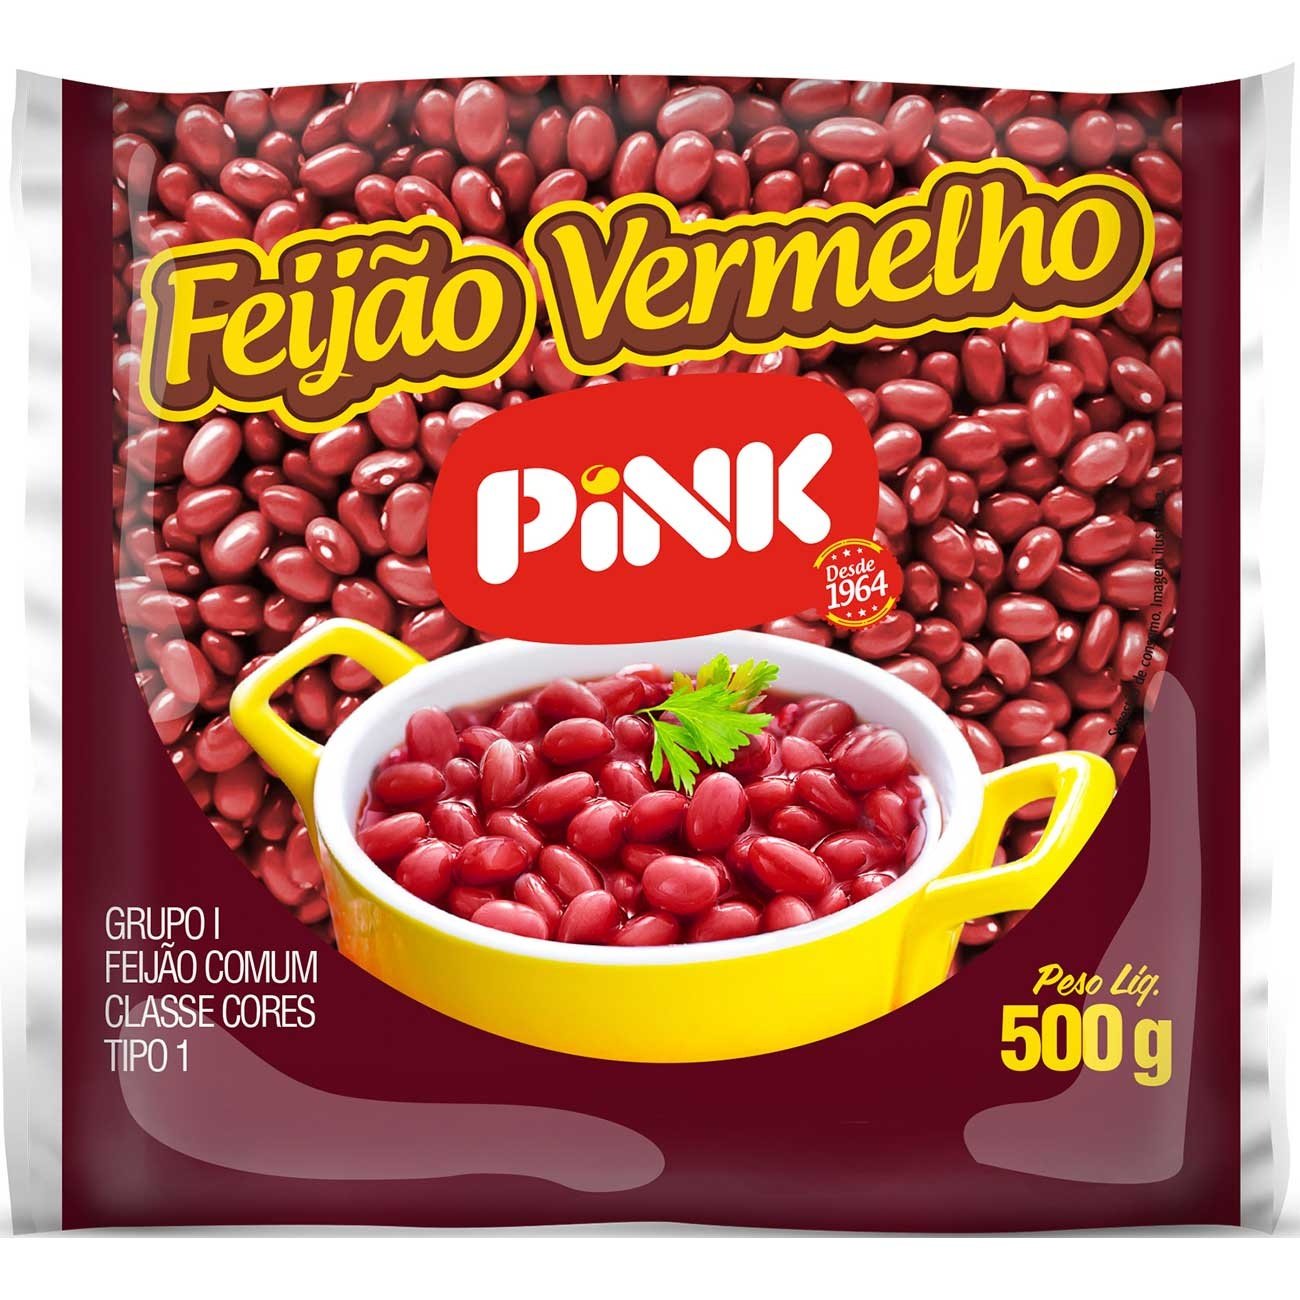 Feijão Vermelho Pink 500g - Compra Food Service